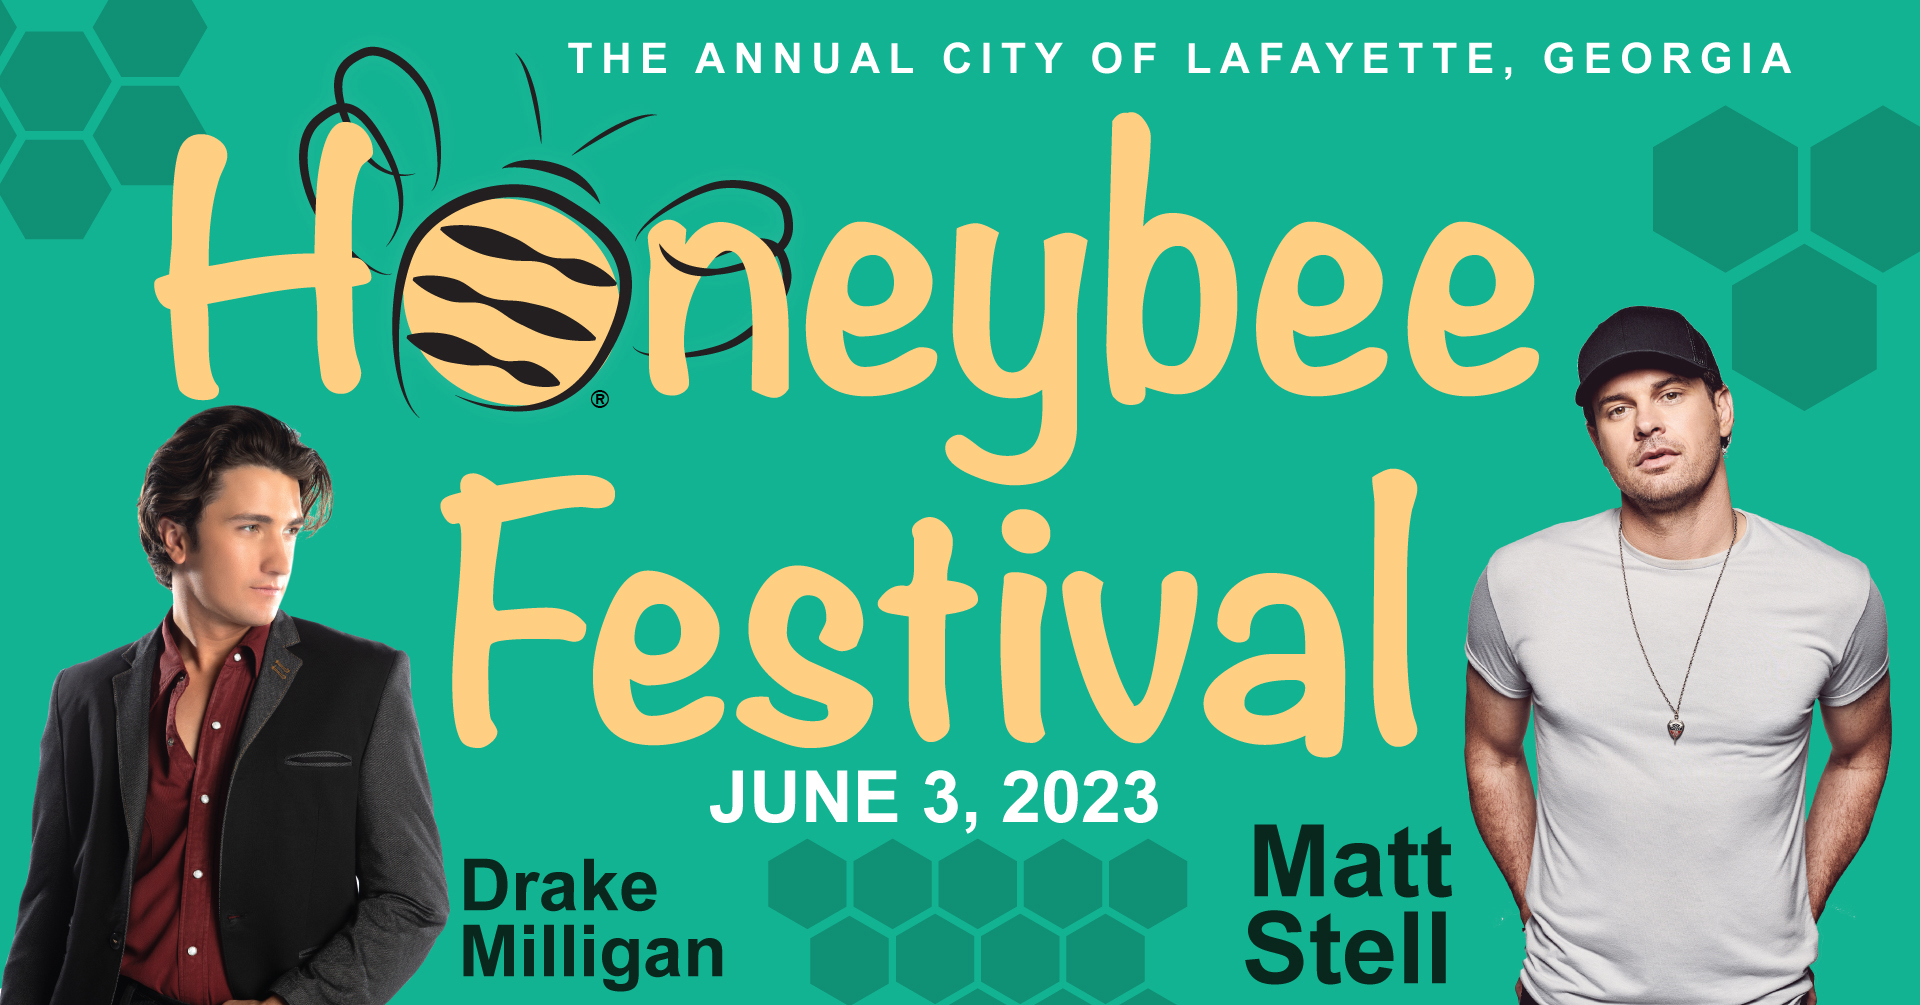 Honeybee Festival 2023 cover image